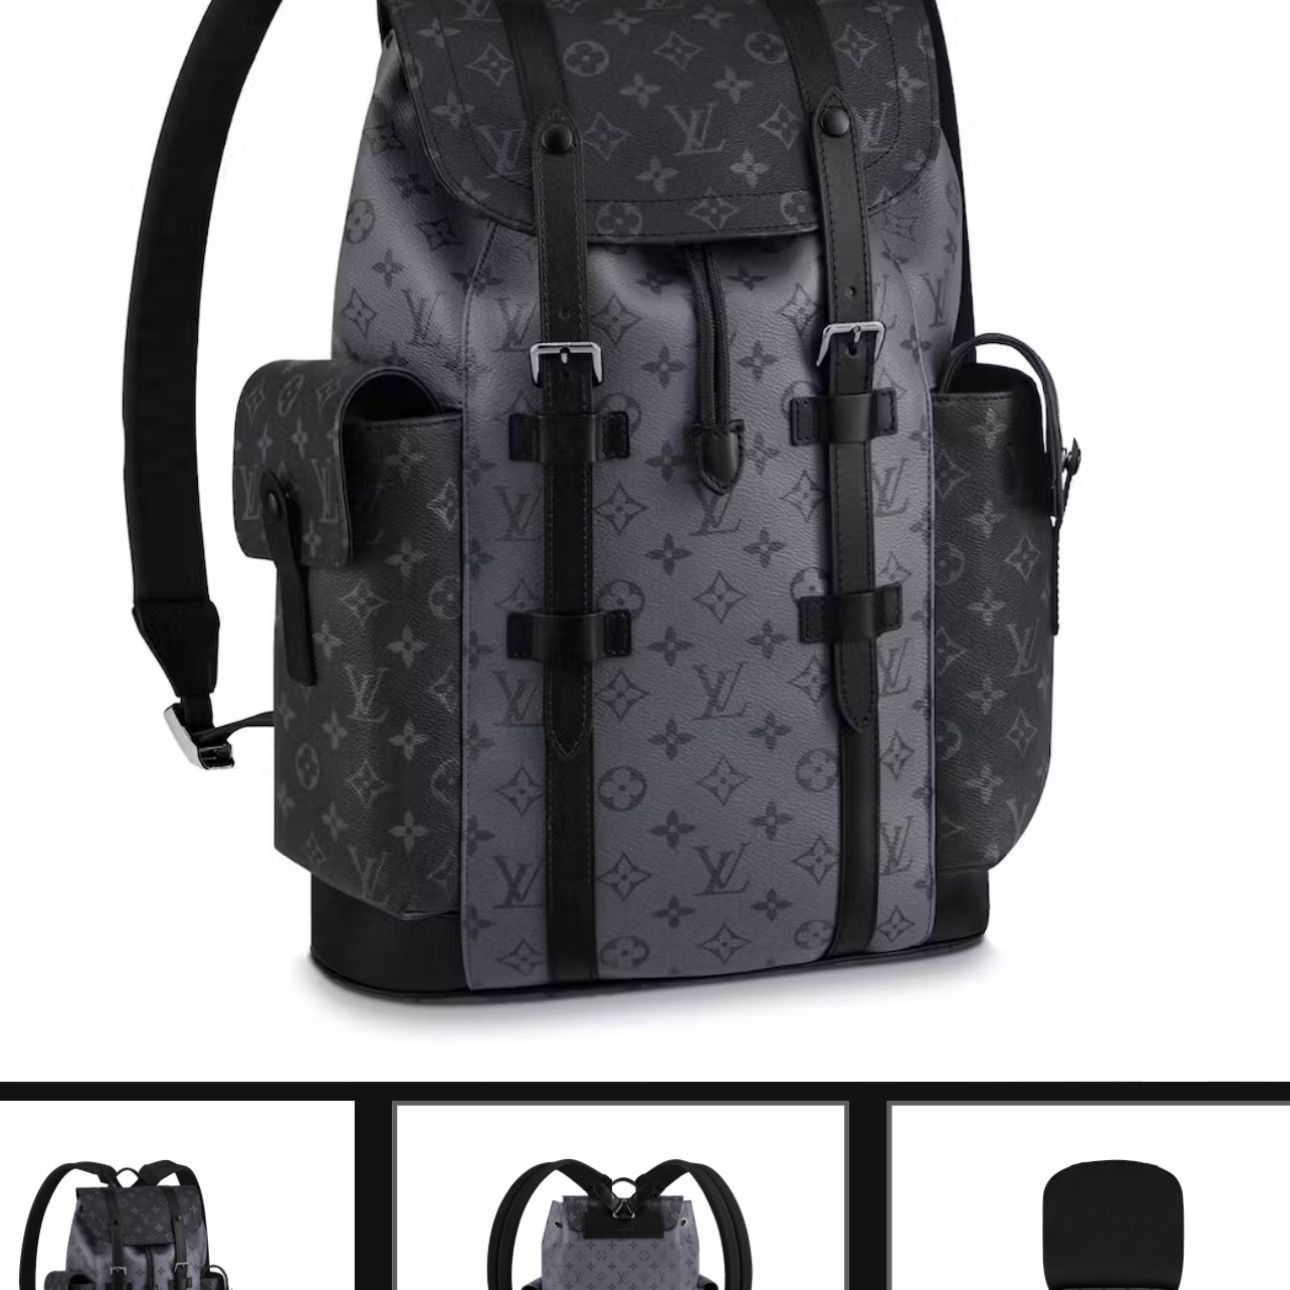 Louis Vuitton Back Pack 